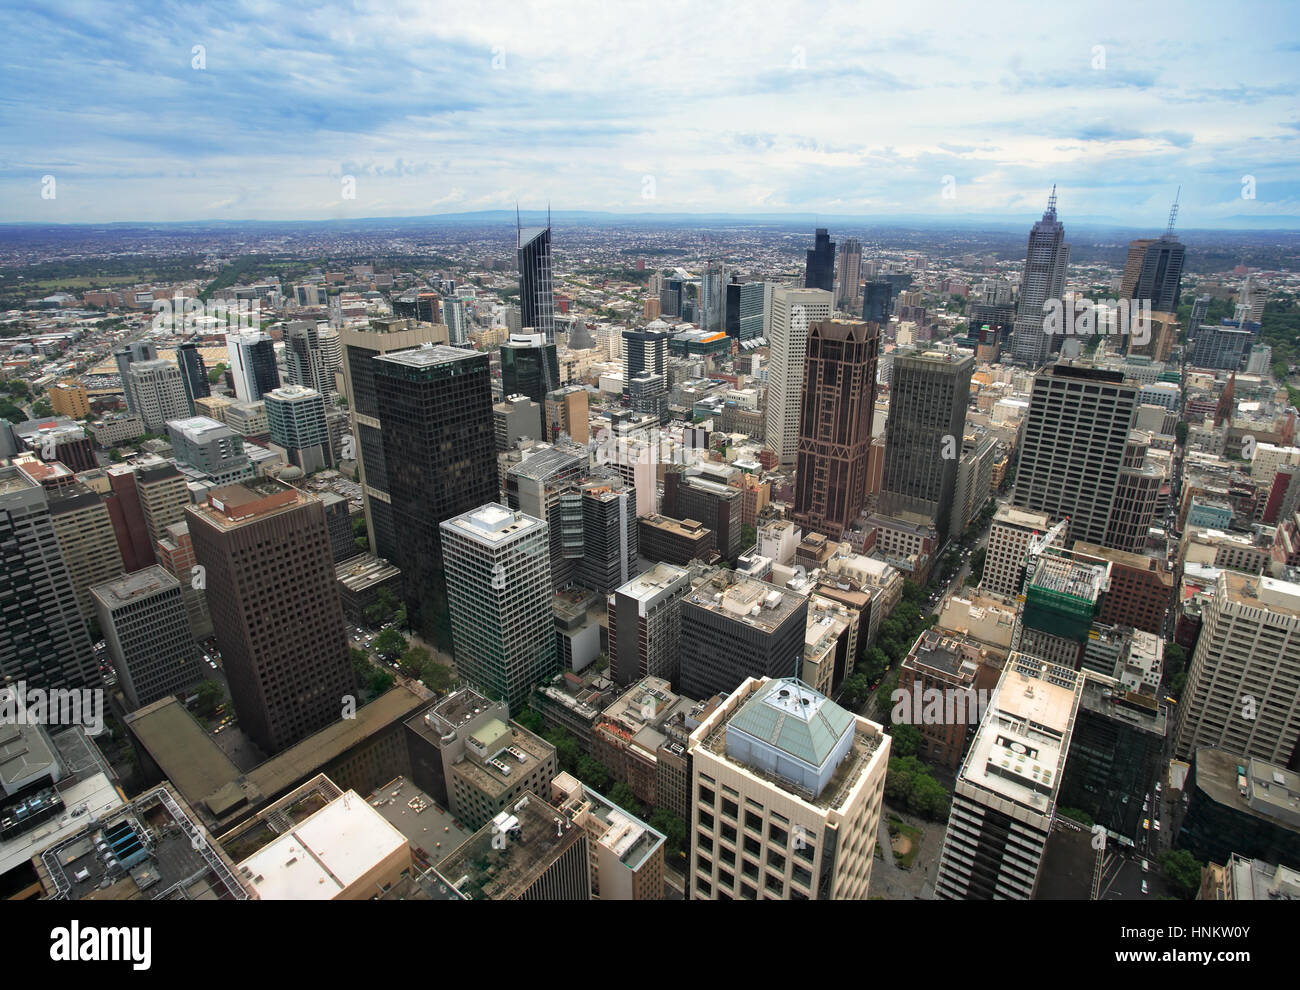 Photo de la ville de Melbourne, Australie prises à partir de la Rialto Tower. Banque D'Images